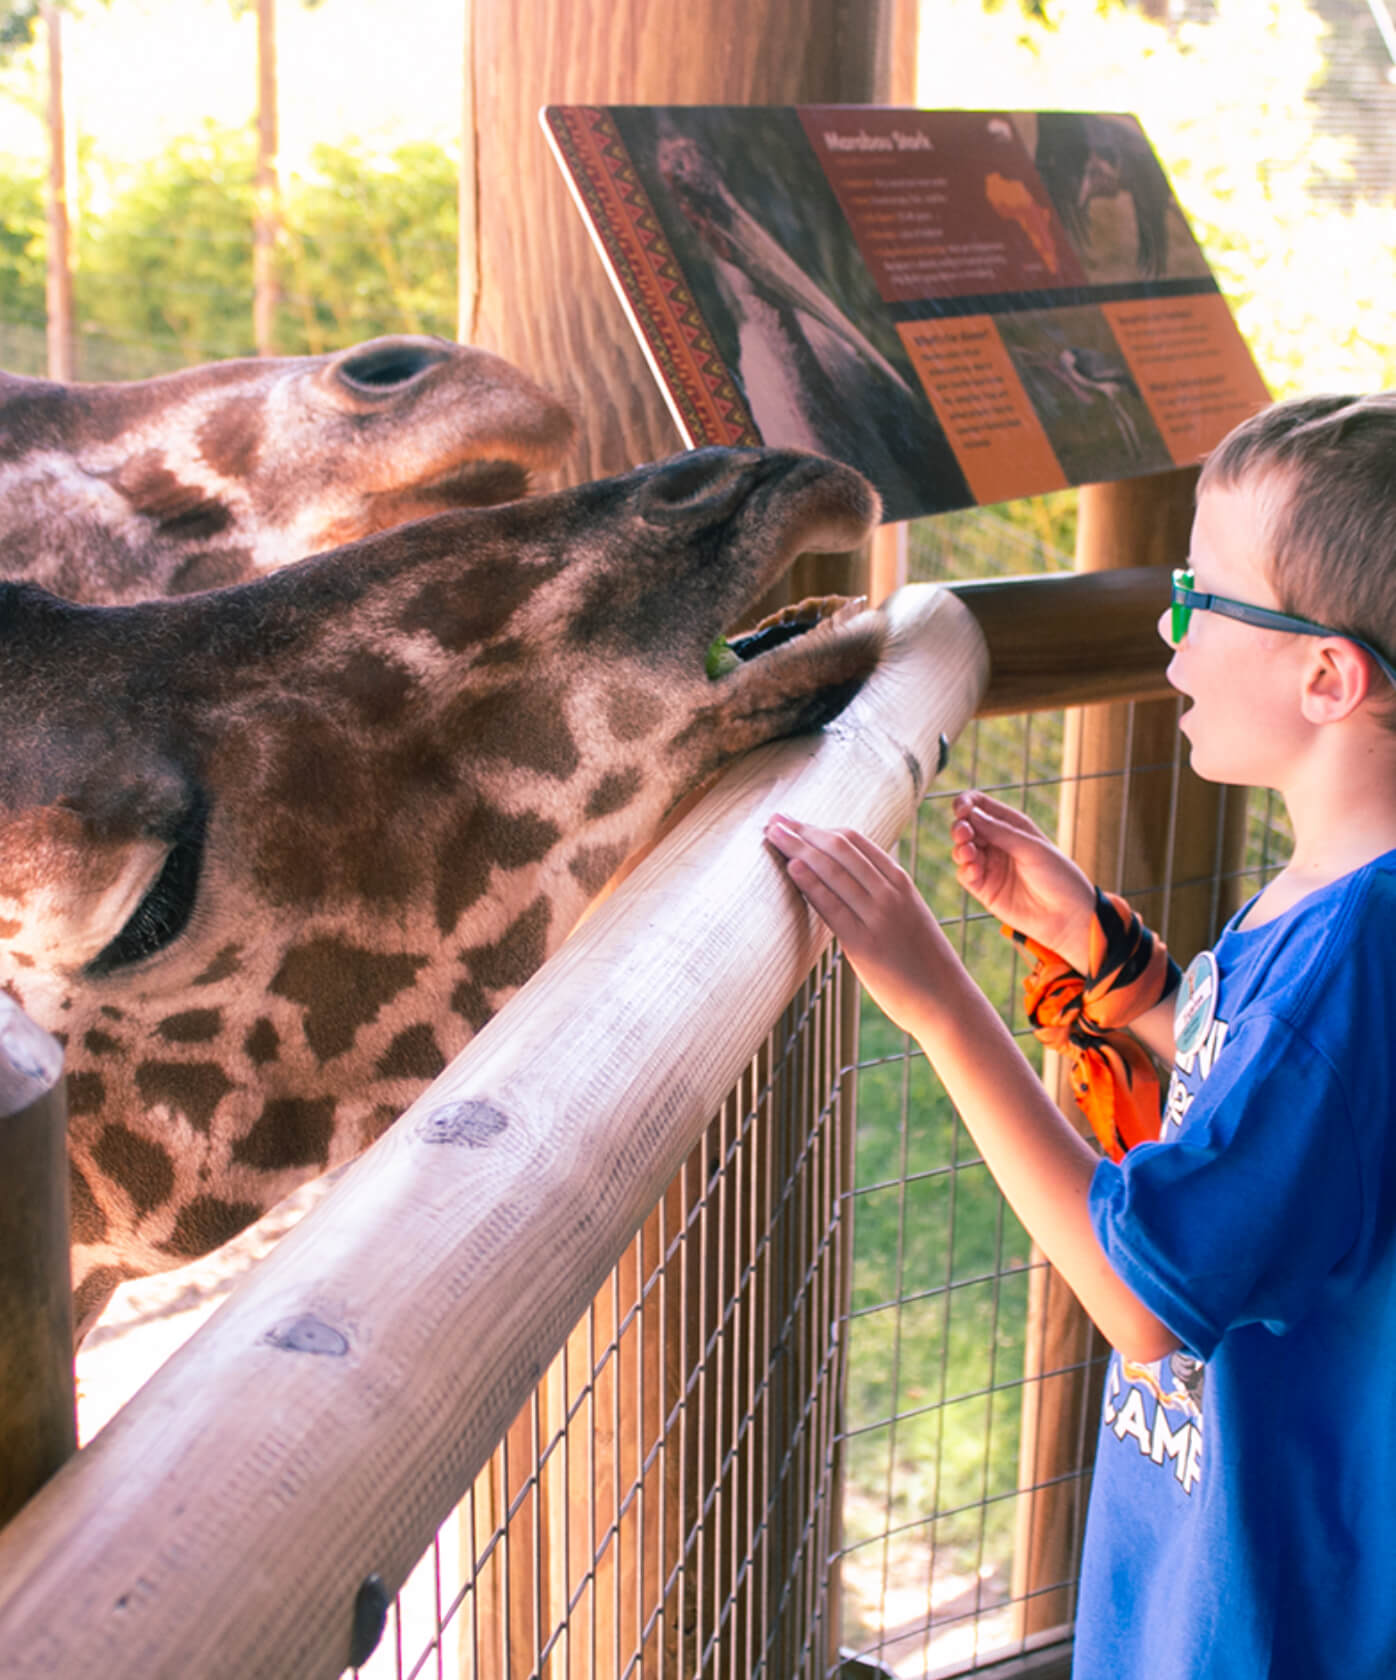 Boy feeding giraffe